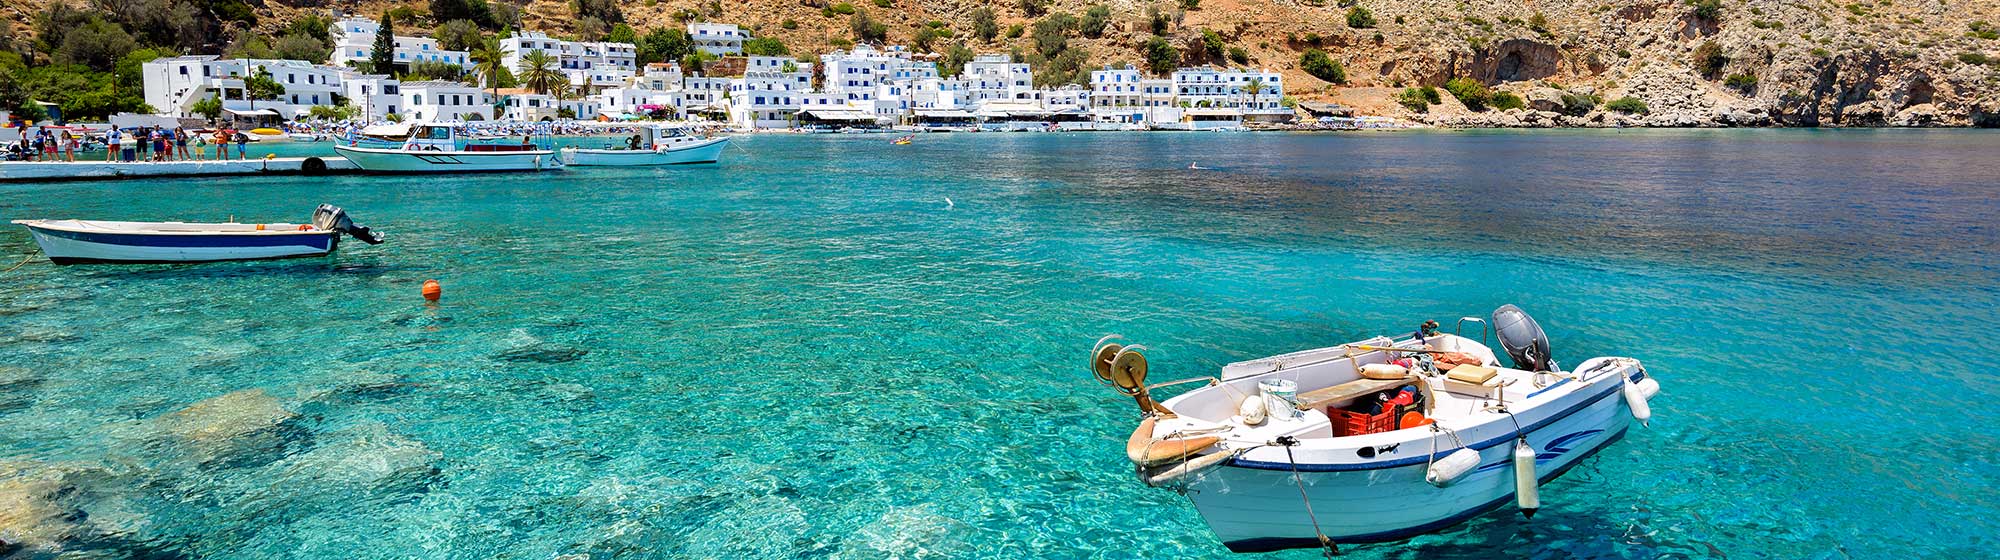 Une barque locale sillonnant les eaux grecques